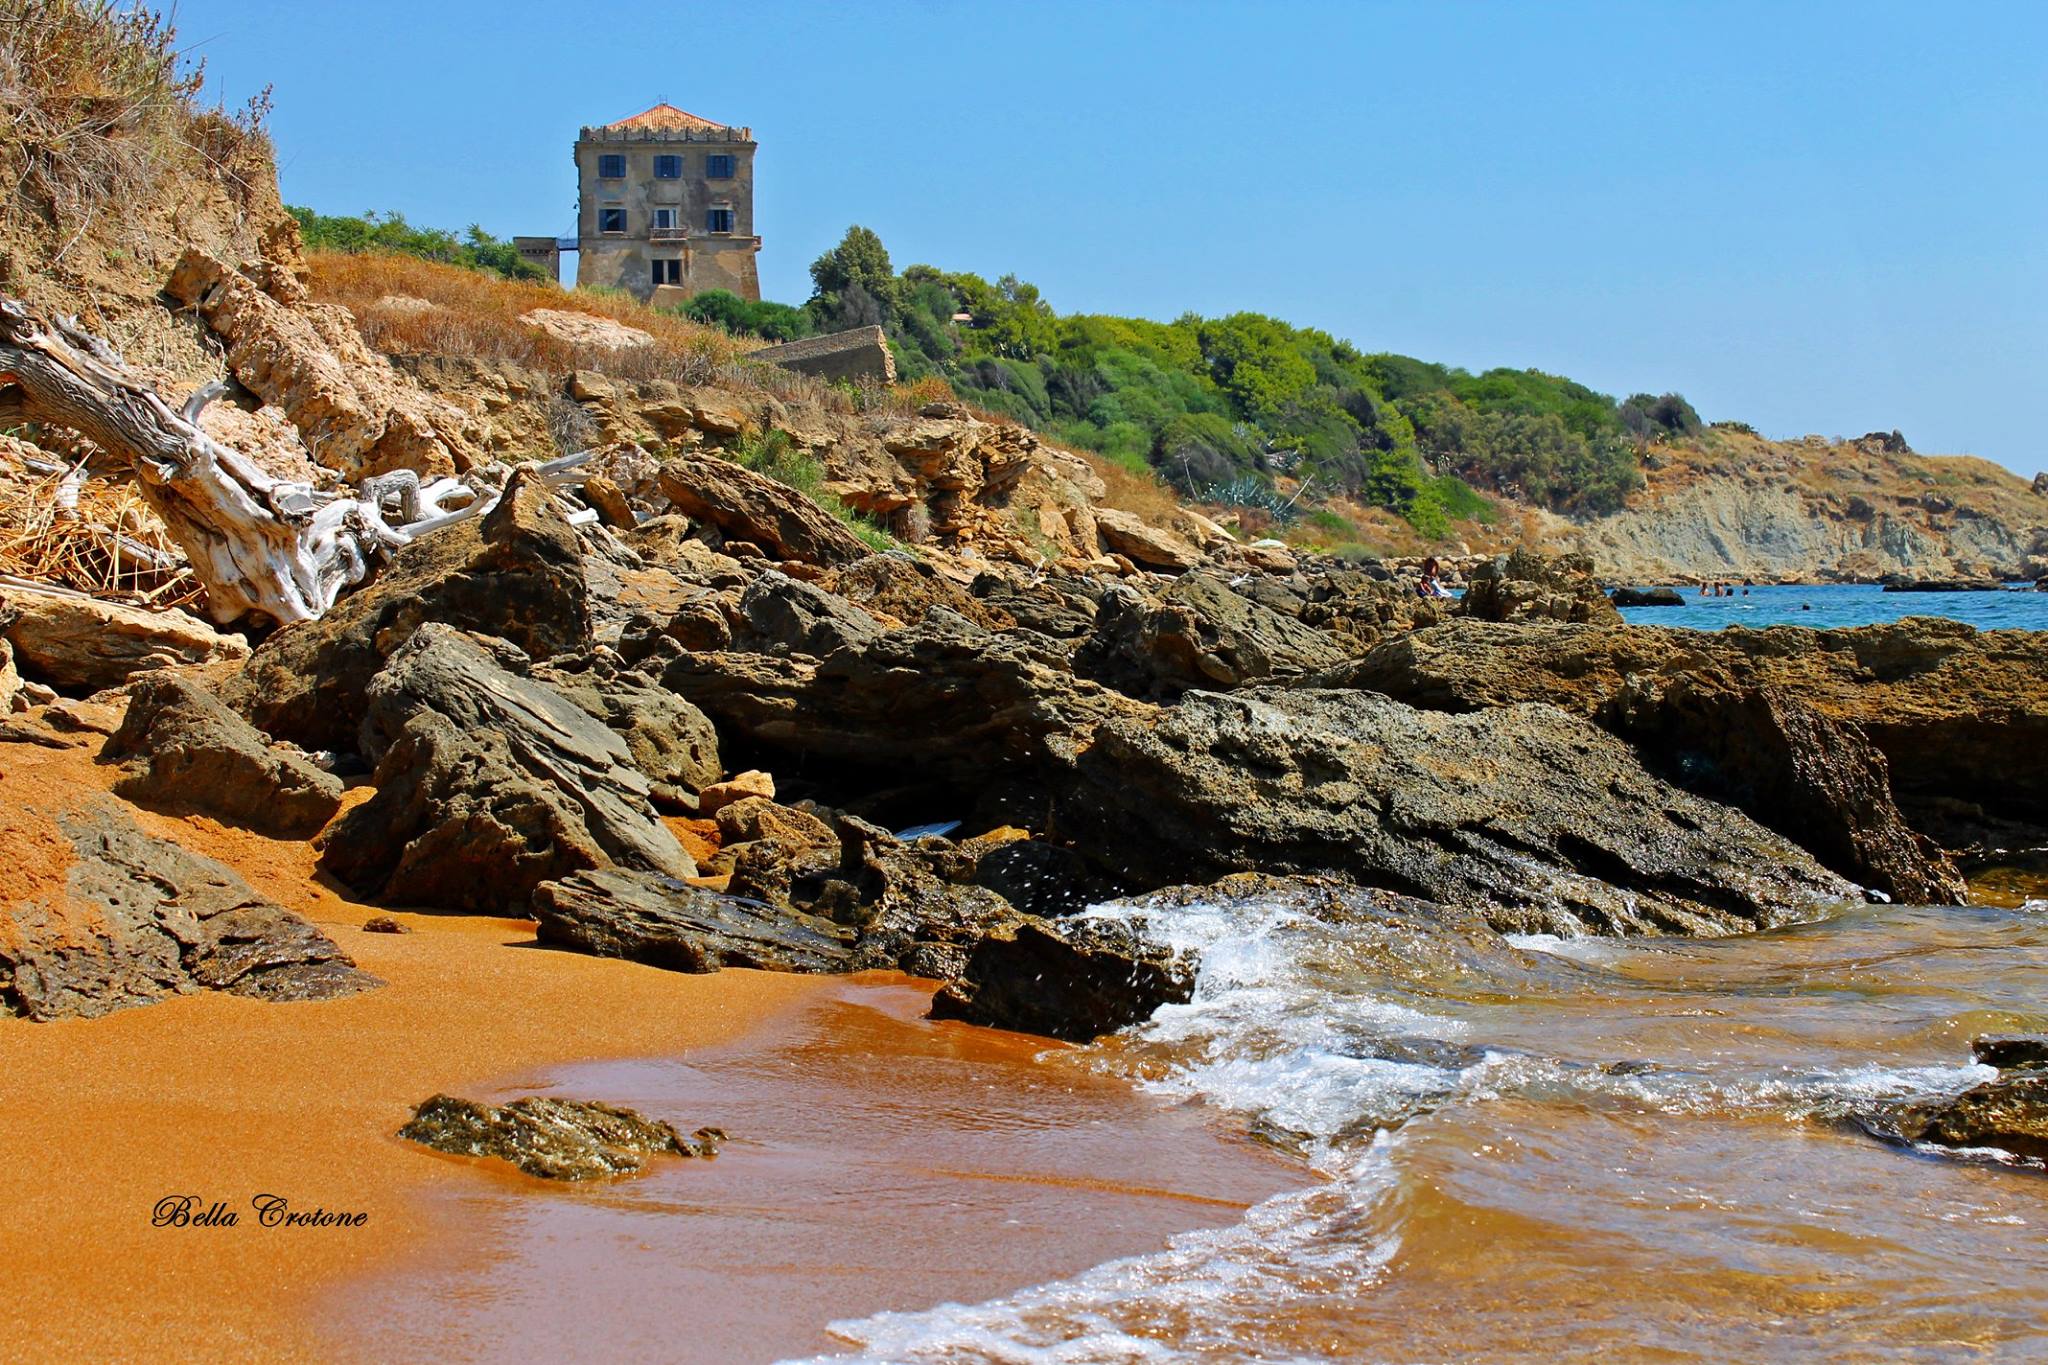 Calabria sotto l'influenza dall'alta pressione africana: giovedì il picco del caldo